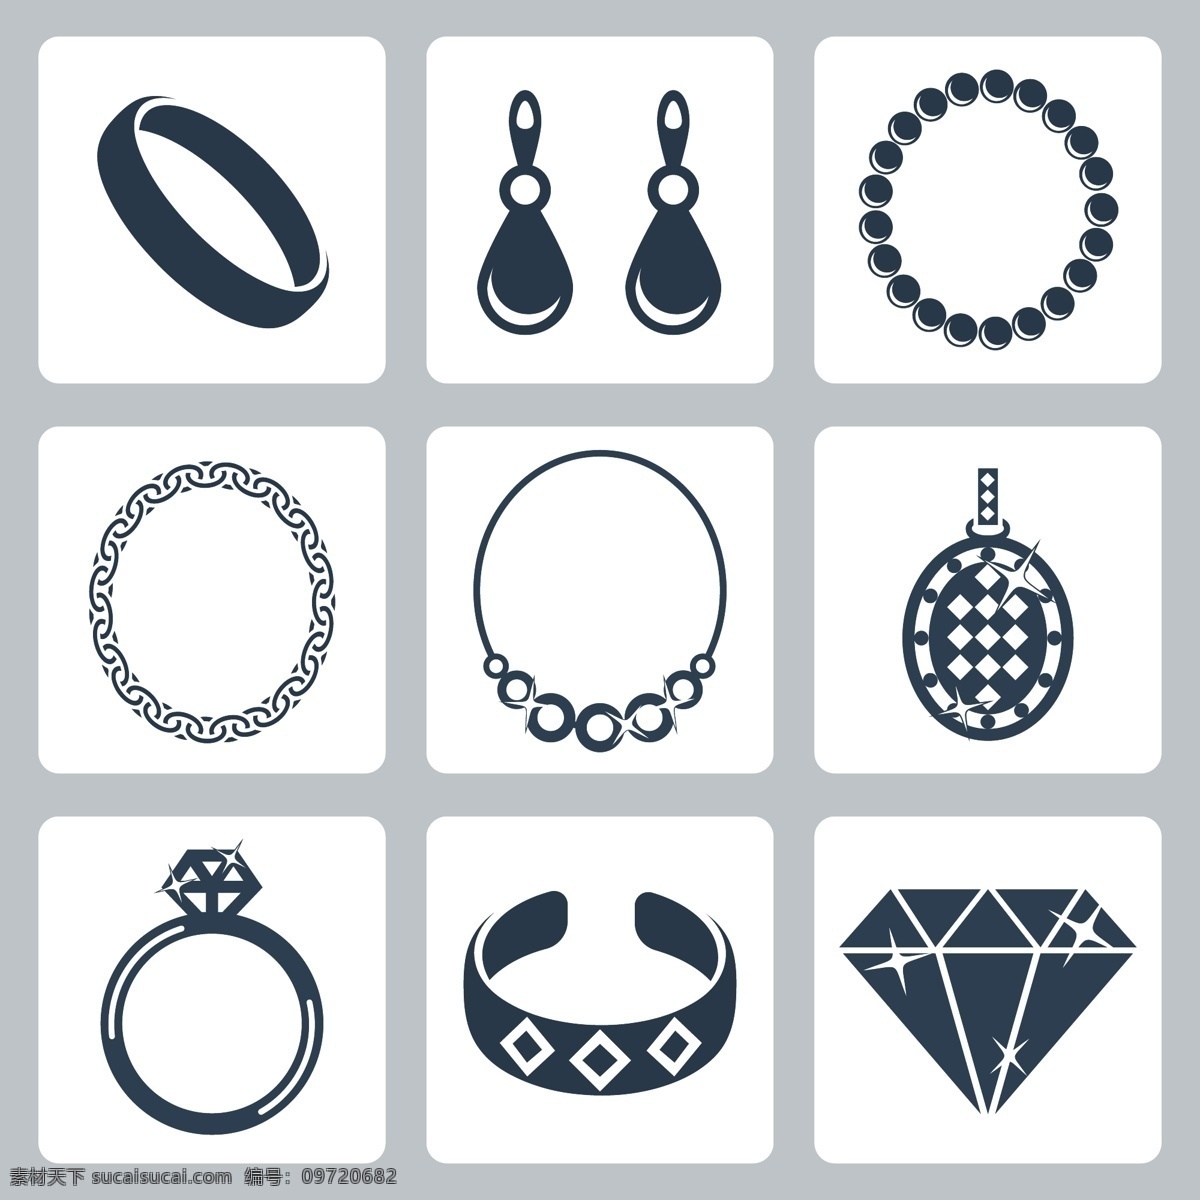 钻石 首饰 项链 精美钻石 珠宝 宝石 钻石广告 矢量素材 生活用品 生活百科